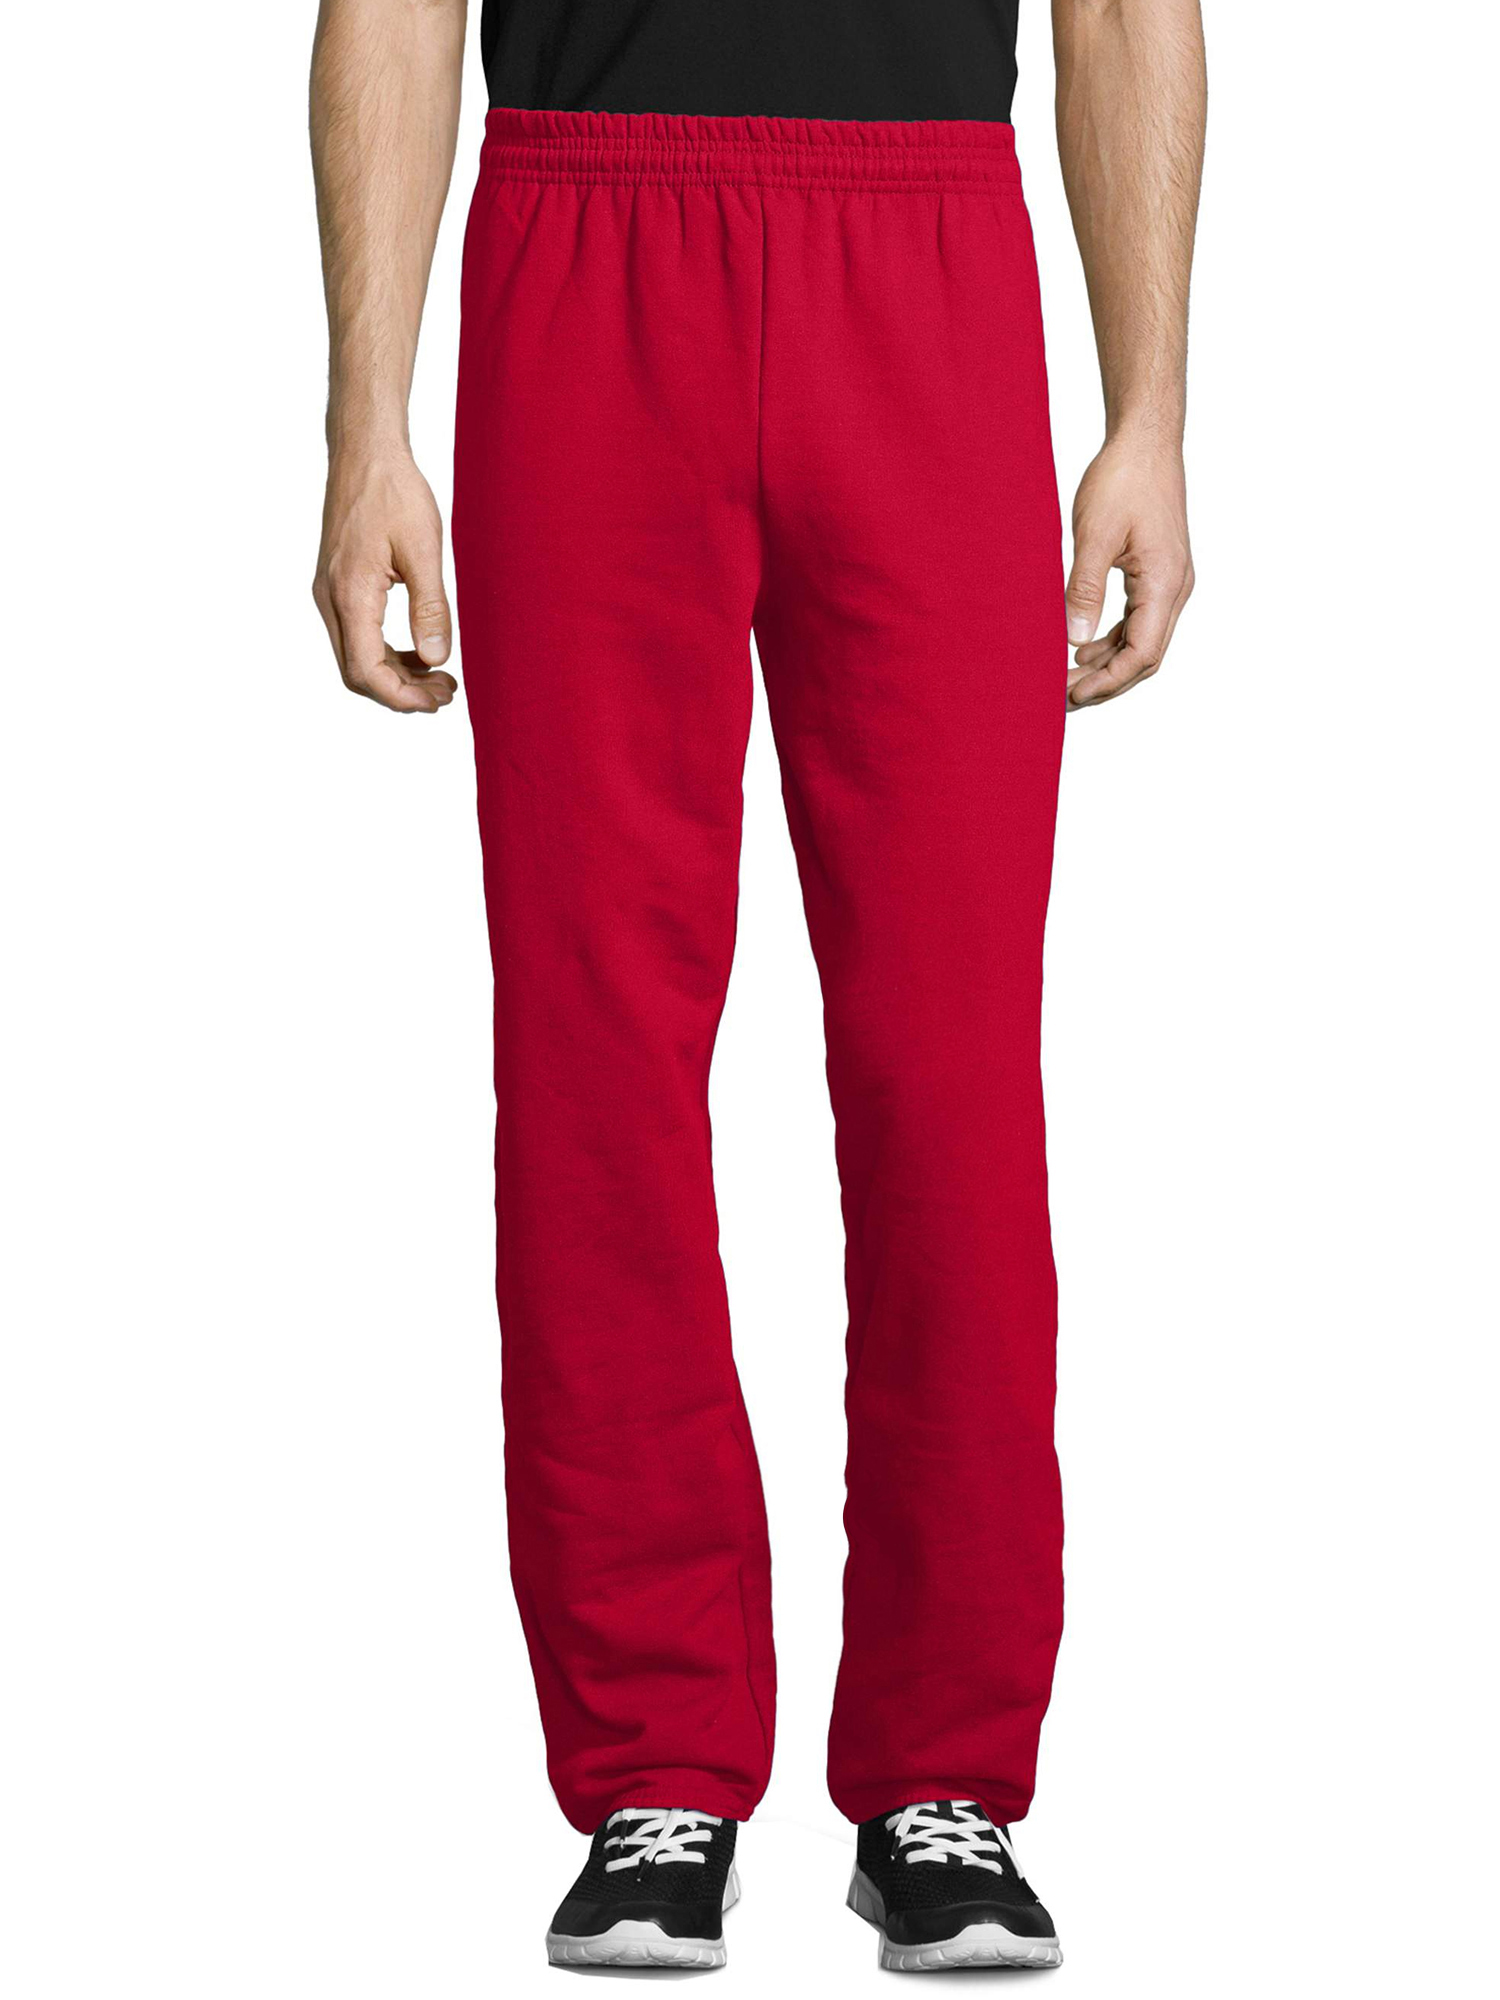 Hanes Men's and Big Men's EcoSmart Fleece Sweatpants, Sizes S-3XL - image 1 of 6